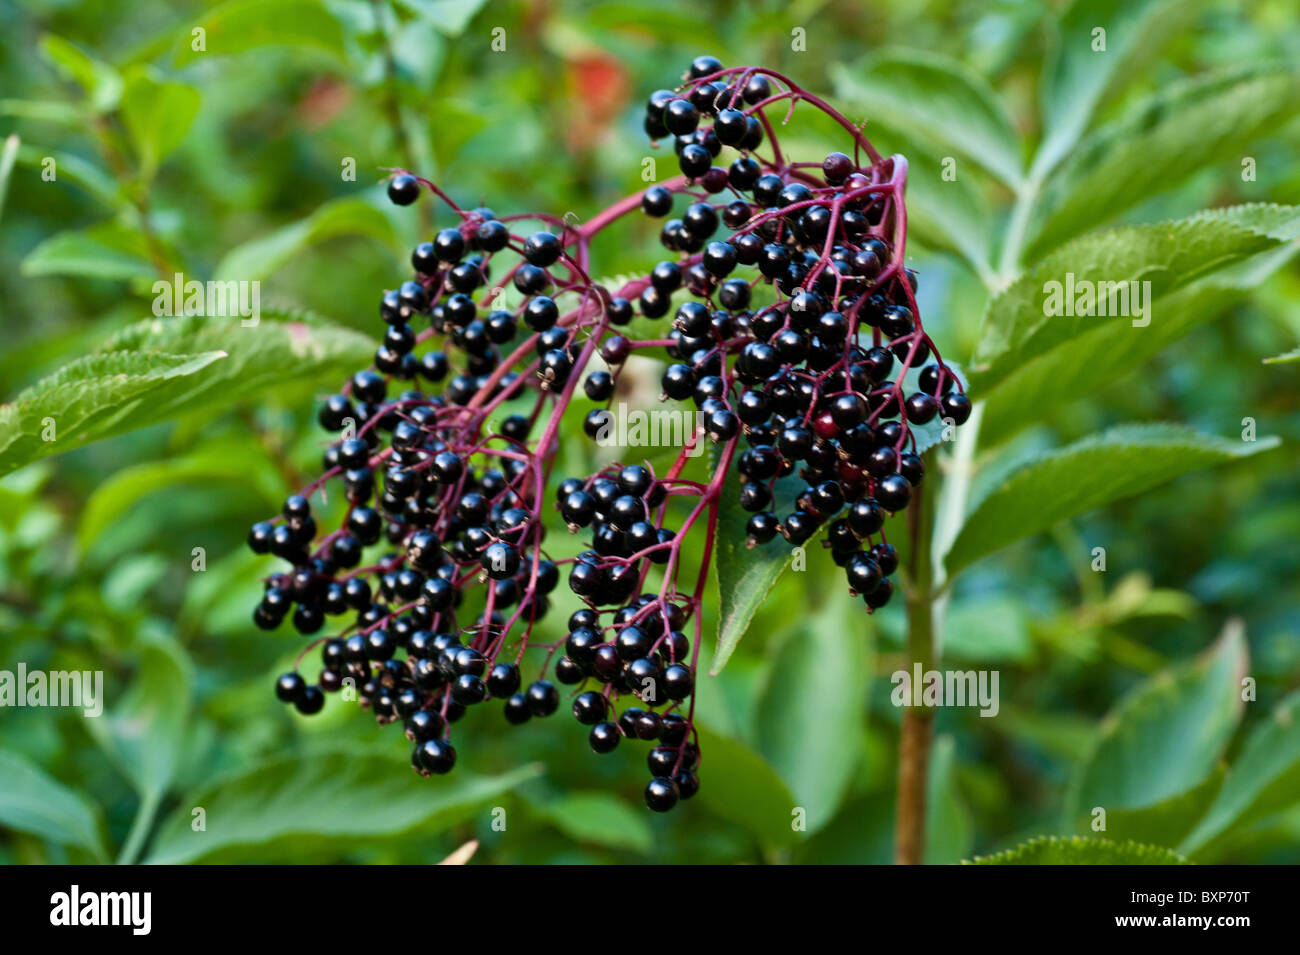 A bunch of elderberries Stock Photo